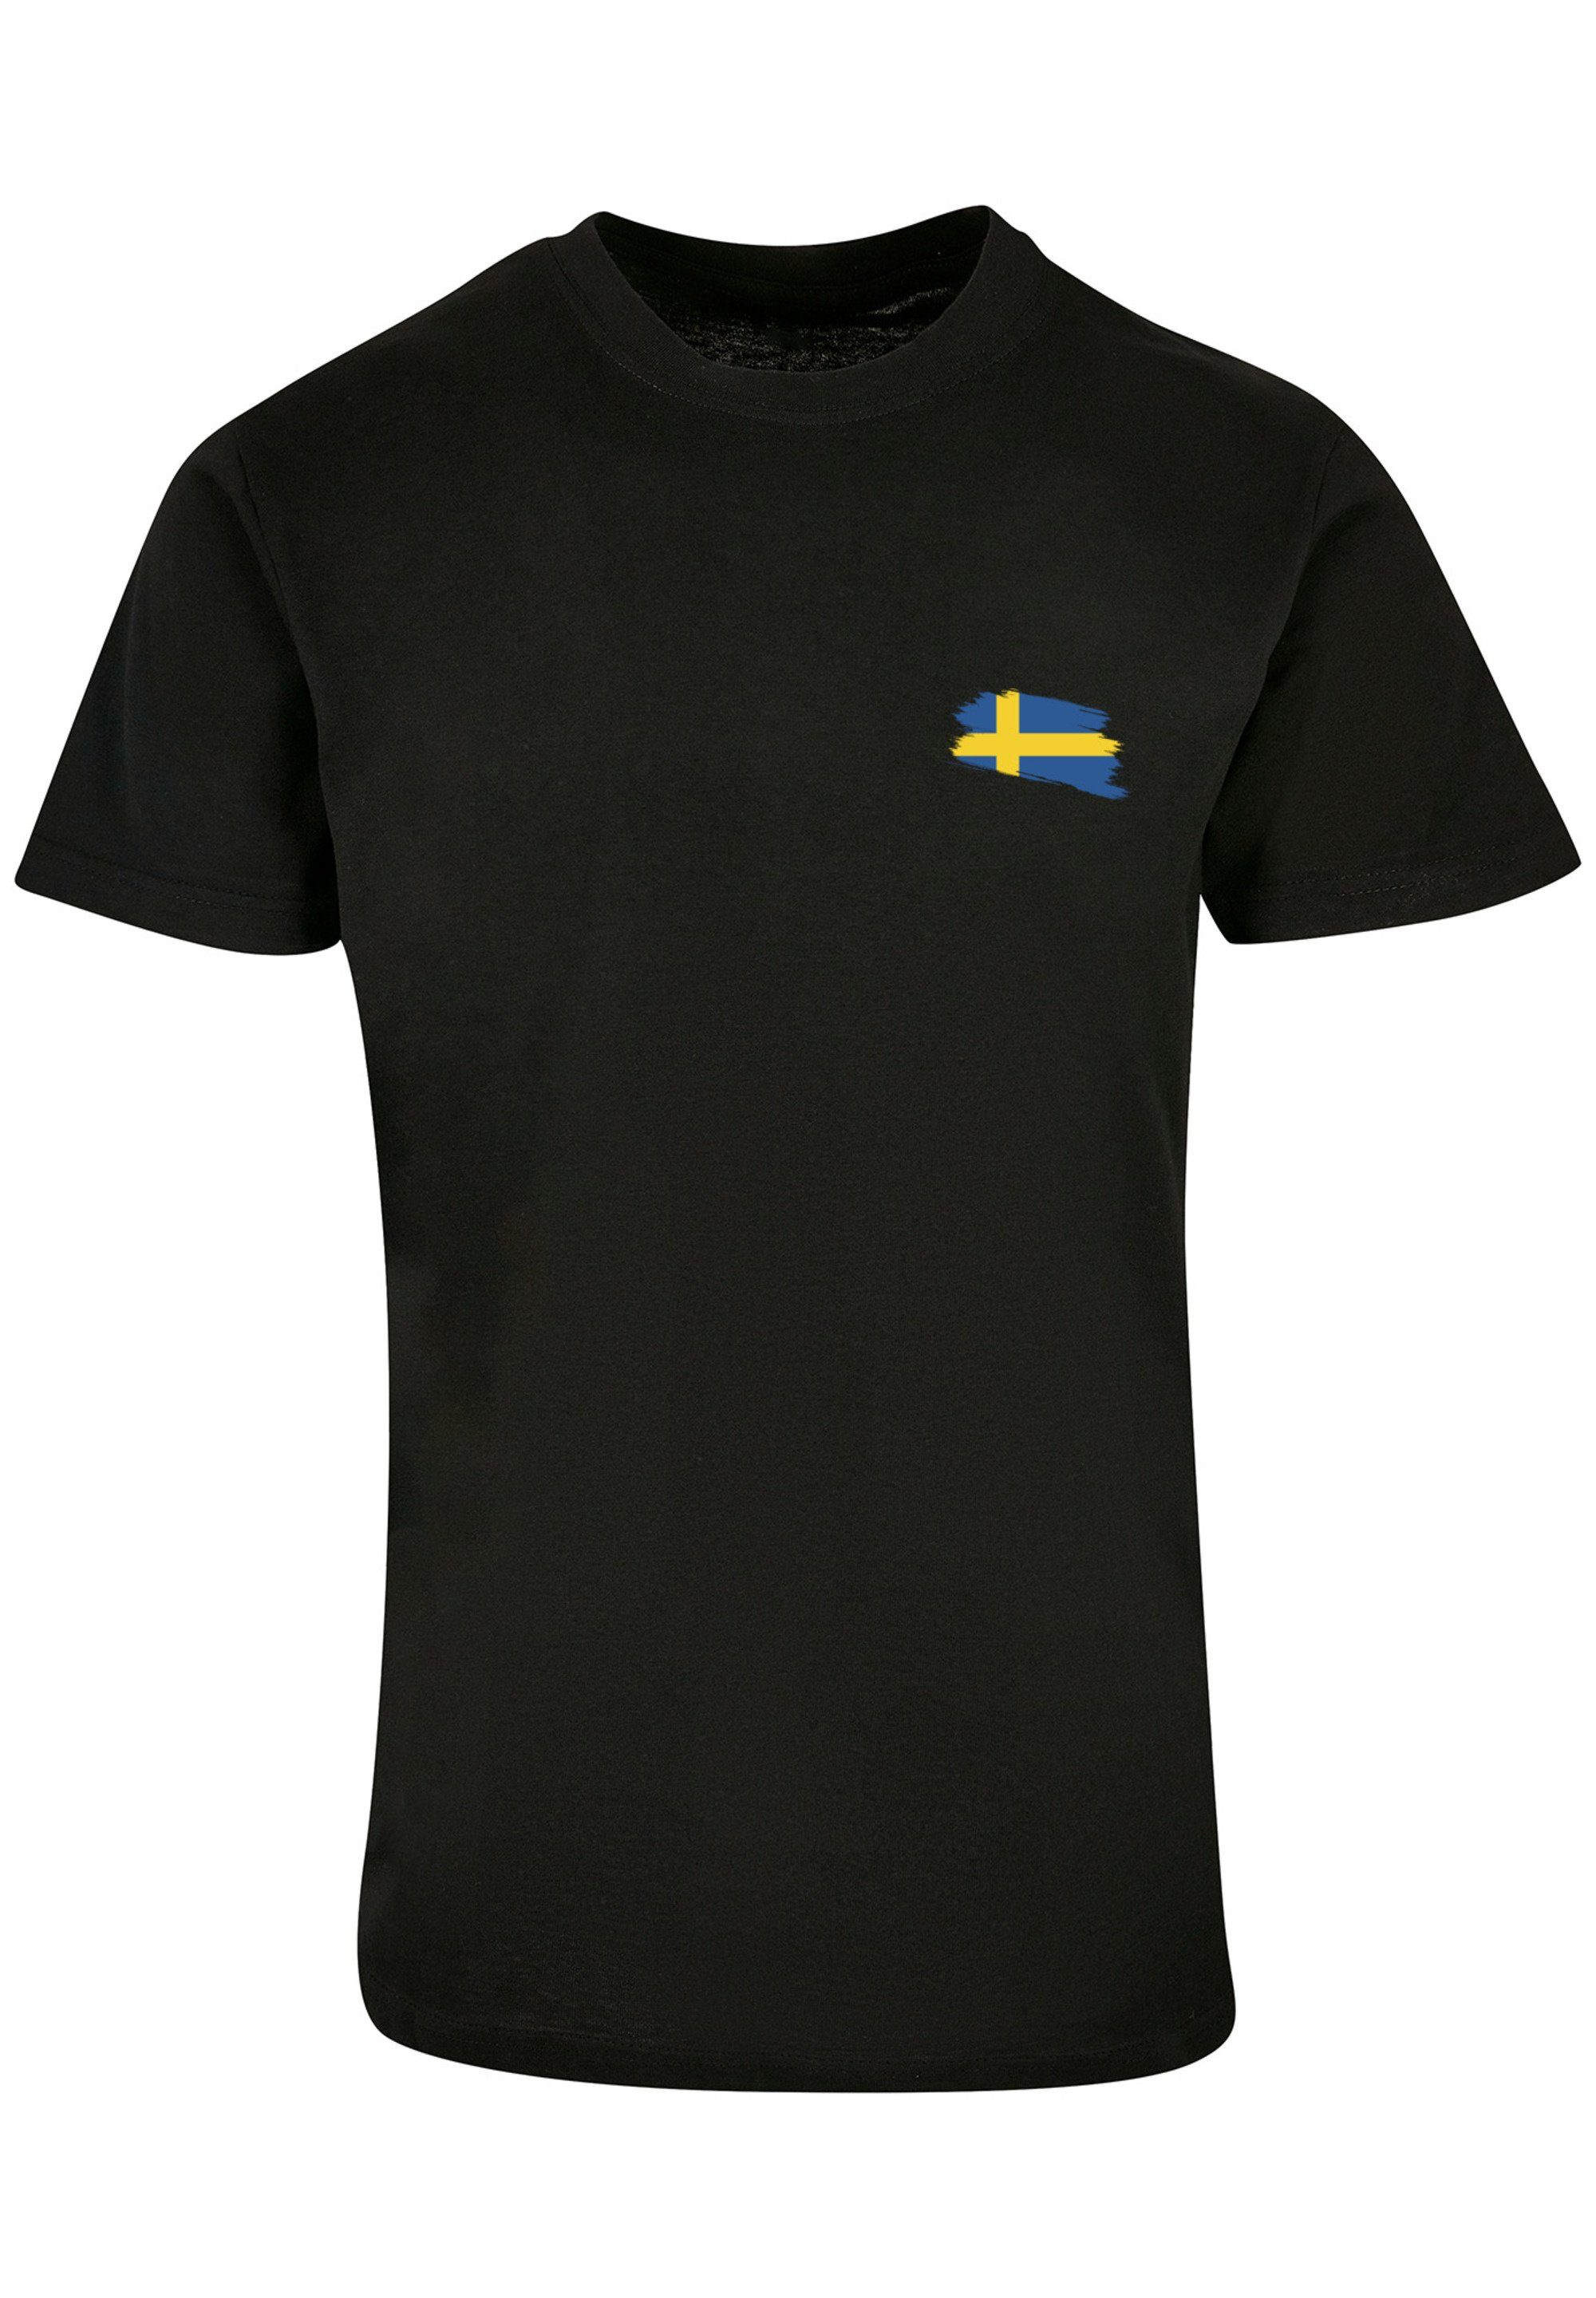 T-Shirt Sweden Print Schweden schwarz Flagge F4NT4STIC